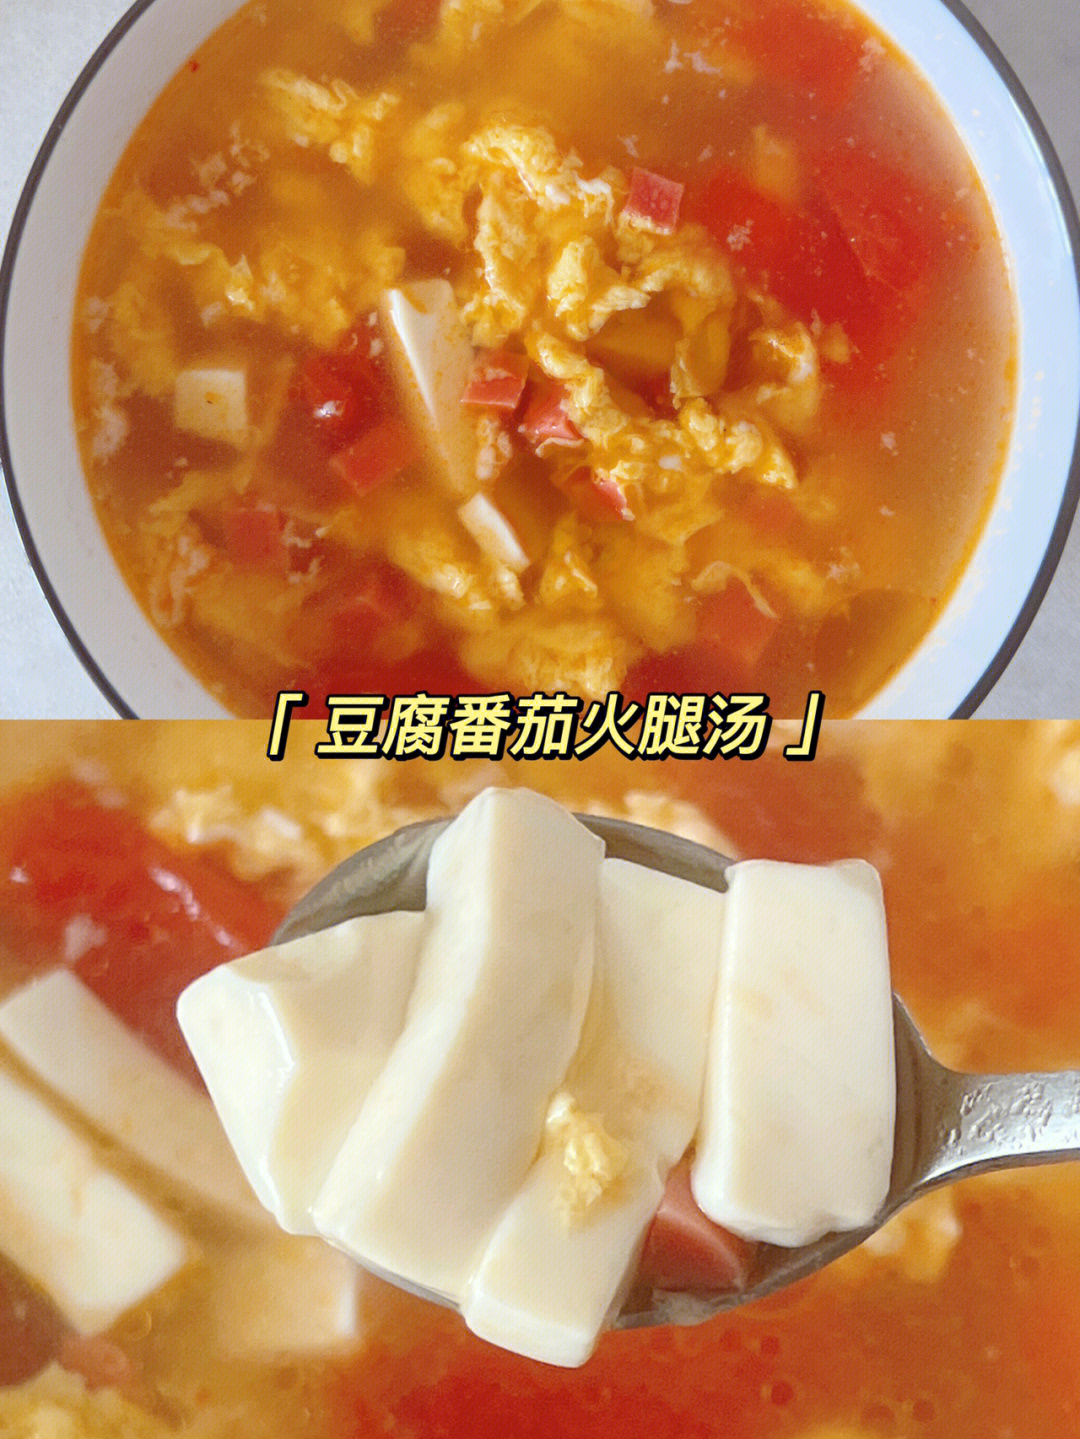 豆腐才是这个汤的主角,吸收了番茄的酸,鸡蛋的滑,火腿的鲜……随便煮